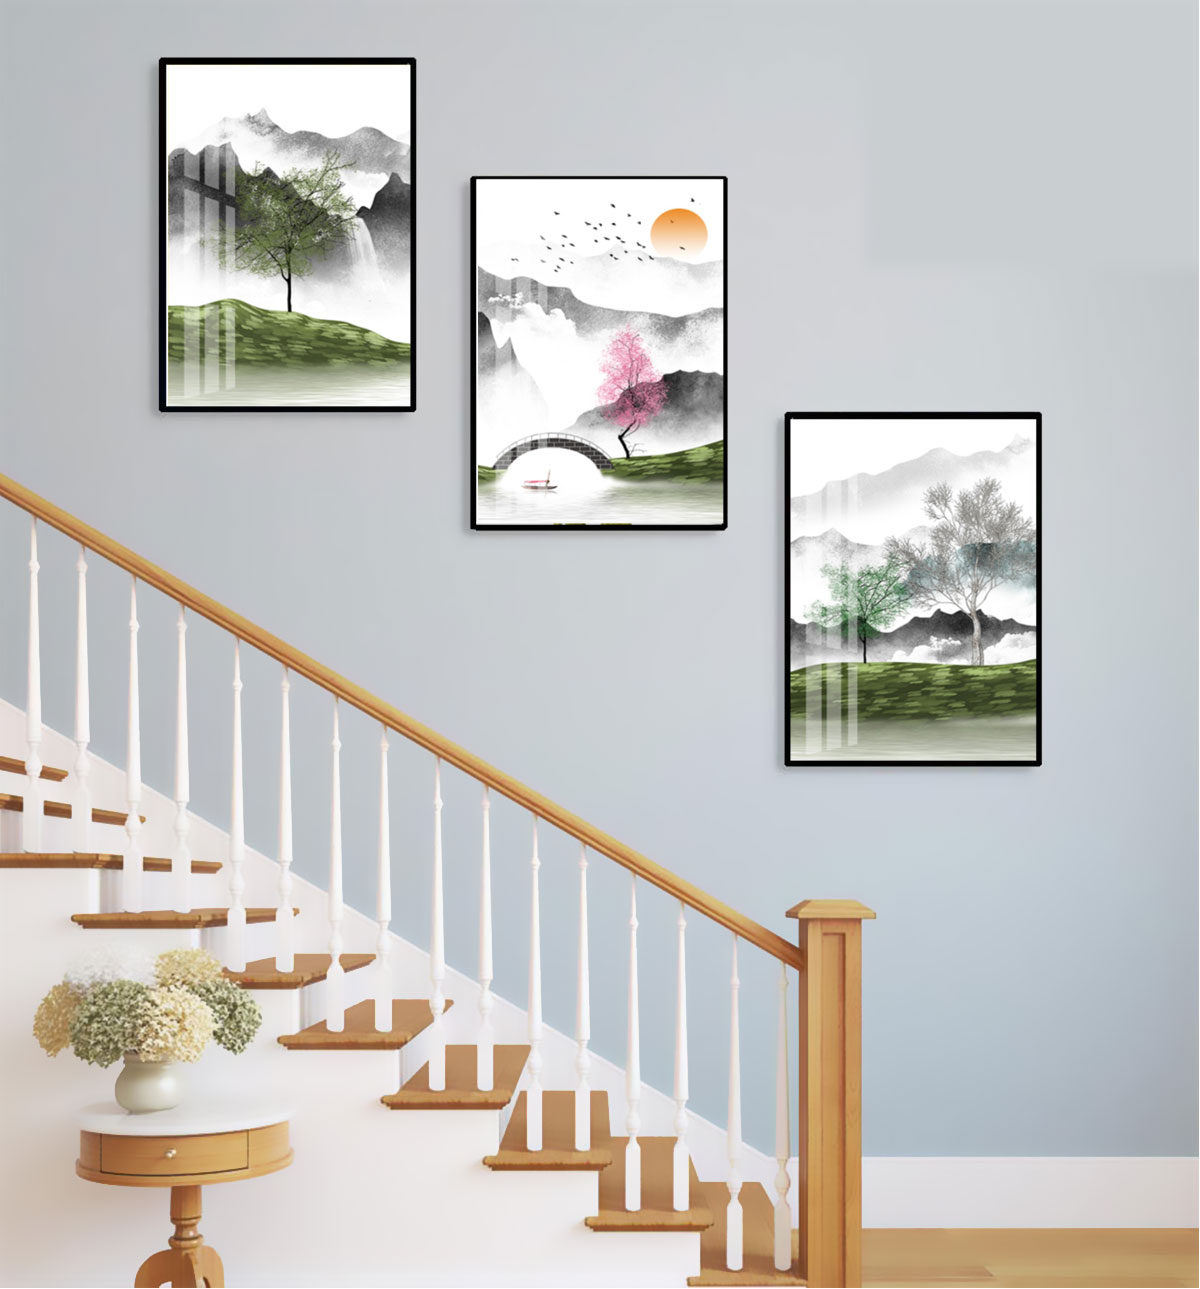 Nếu bạn đang tìm kiếm nét đặc trưng và hiện đại cho ngôi nhà của mình, hãy thử đặt một bức tranh treo cầu thang hiện đại. Mang lại sự mới mẻ cho bộ sưu tập tranh của bạn, chúng có thể tạo nên một điểm nhấn cho không gian sống của bạn.